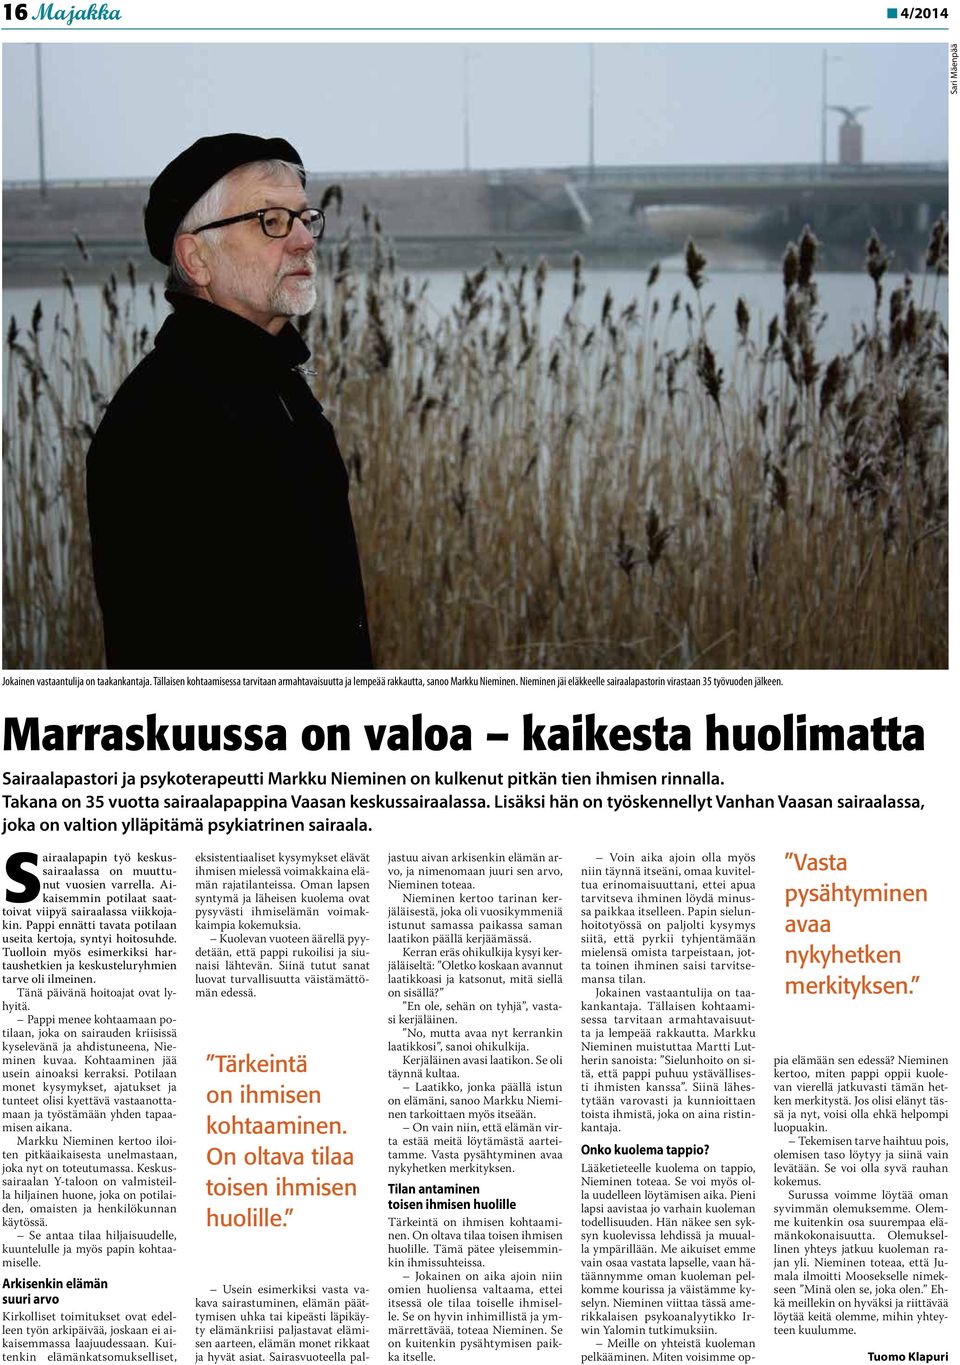 Marraskuussa on valoa kaikesta huolimatta Sairaalapastori ja psykoterapeutti Markku Nieminen on kulkenut pitkän tien ihmisen rinnalla. Takana on 35 vuotta sairaalapappina Vaasan keskussairaalassa.